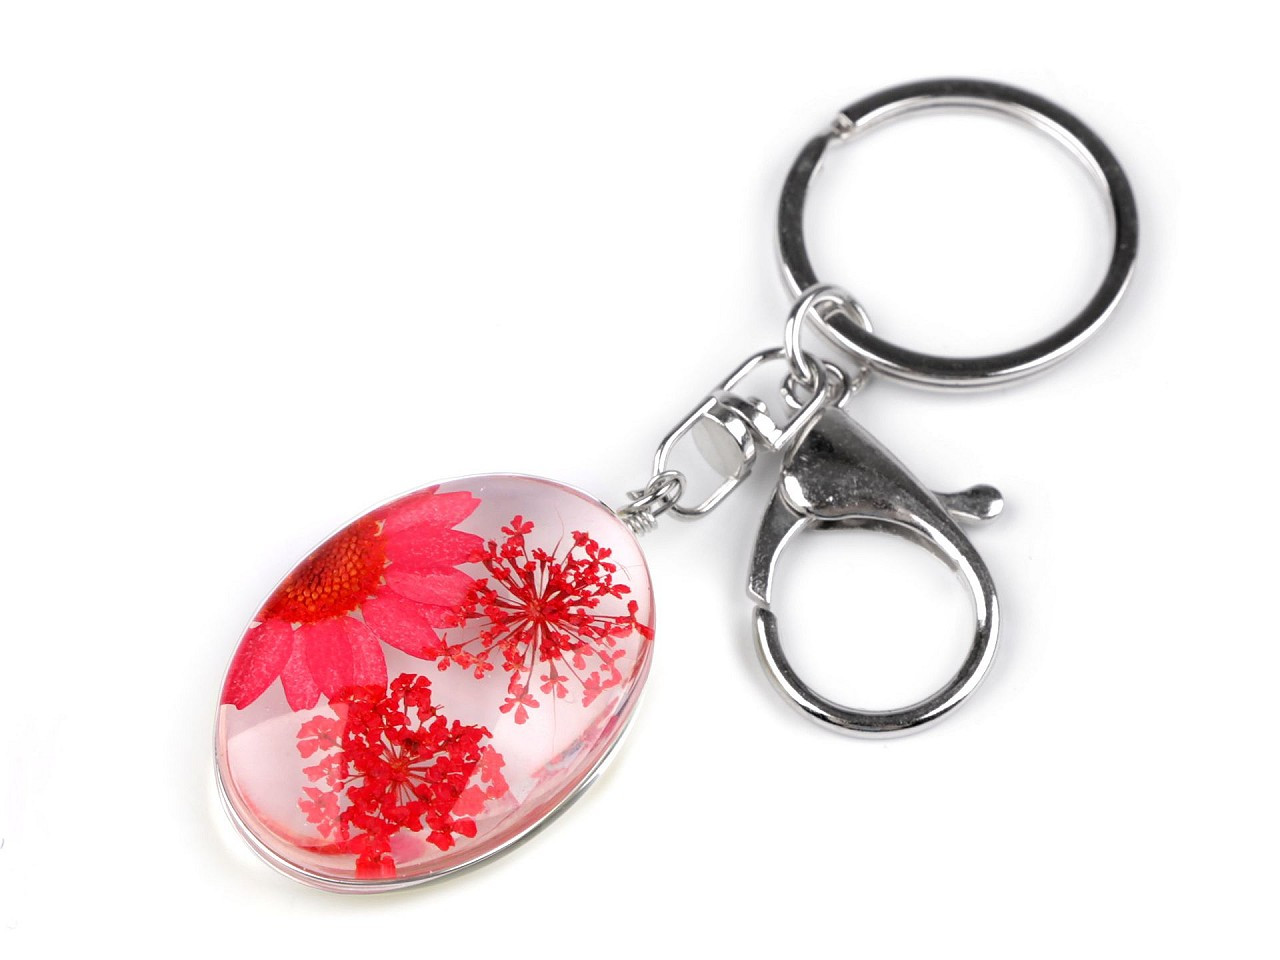 Přívěsek na klíče / kabelku lisované květy v oválu, barva 5 korálová světlá